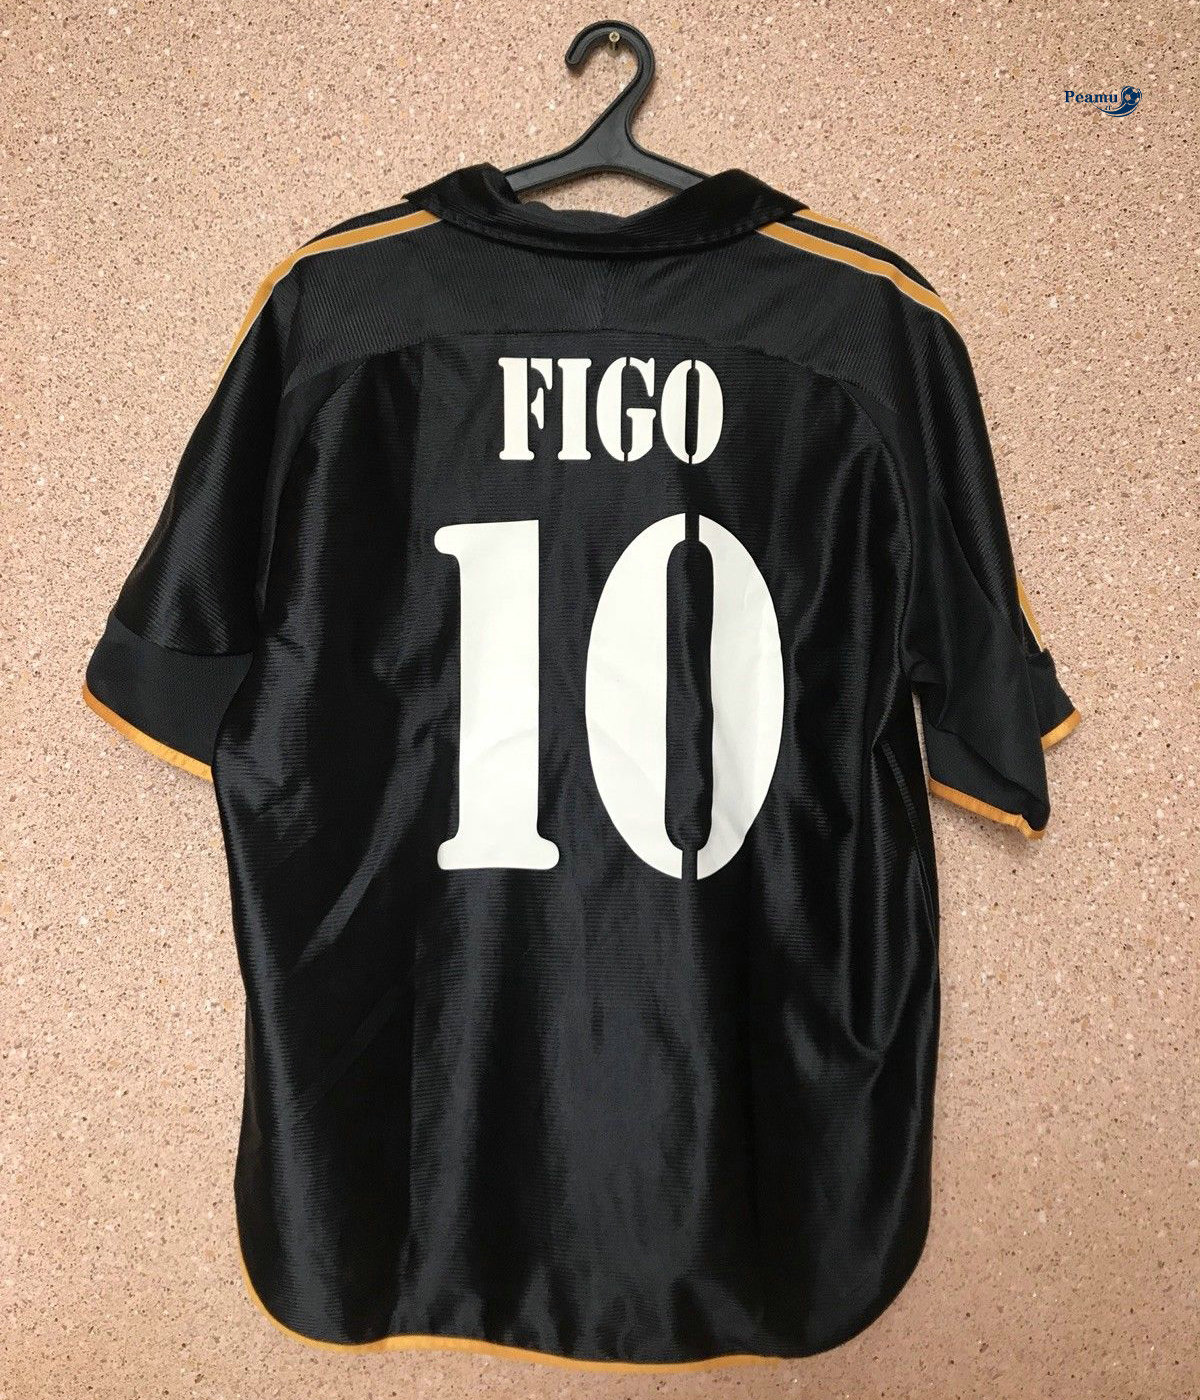 Classico Maglie Real Madrid Noir (10 Figo) 1999-00